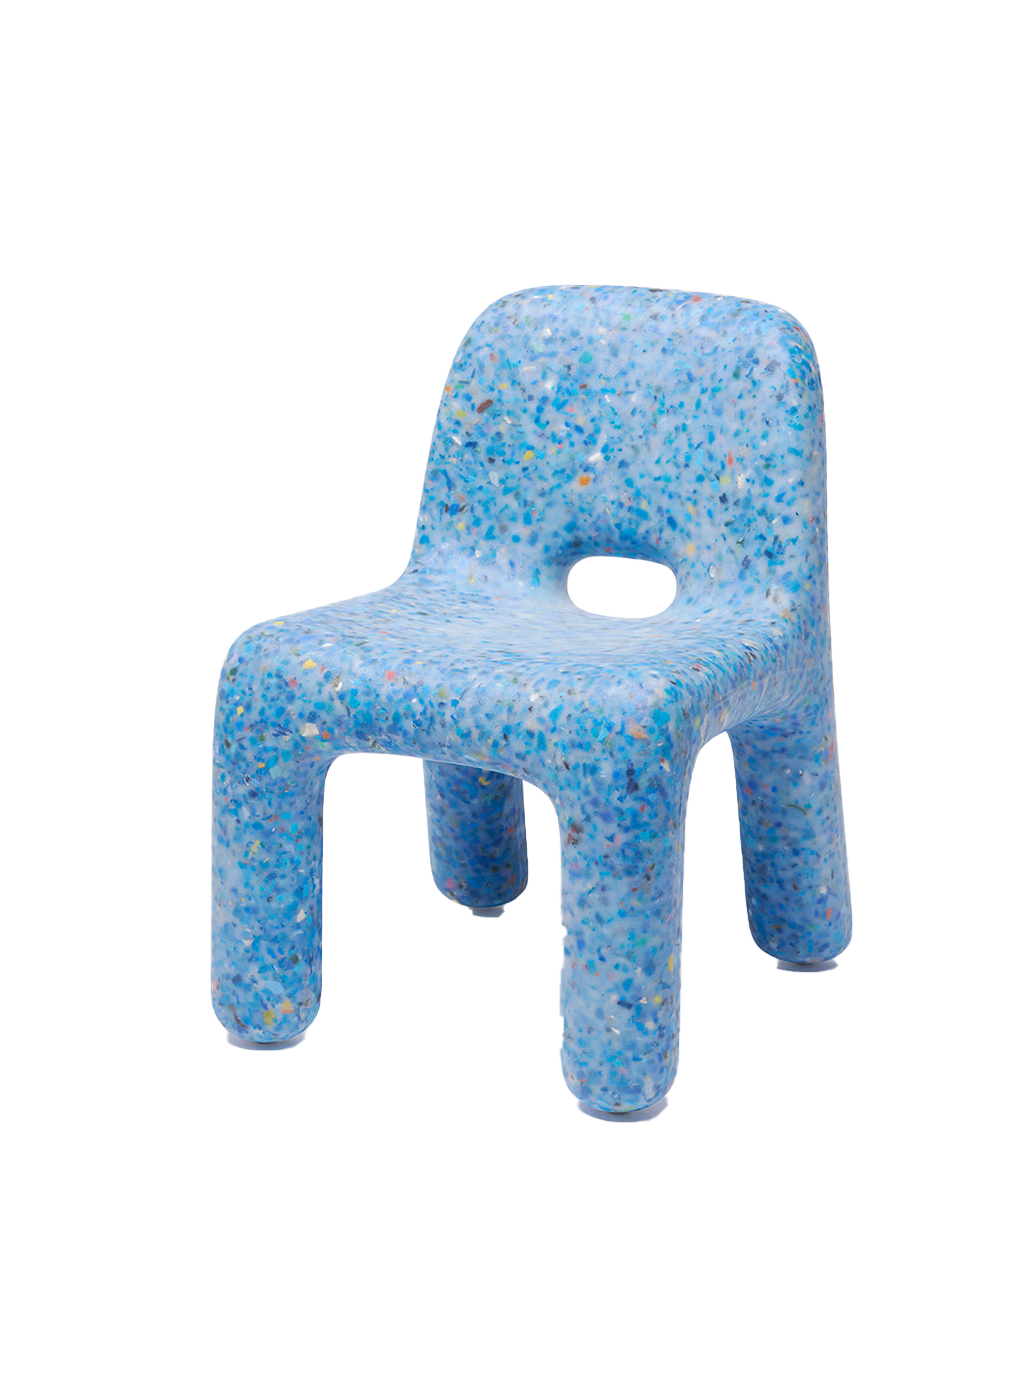 chaise en matériau écologique Charlie Chair